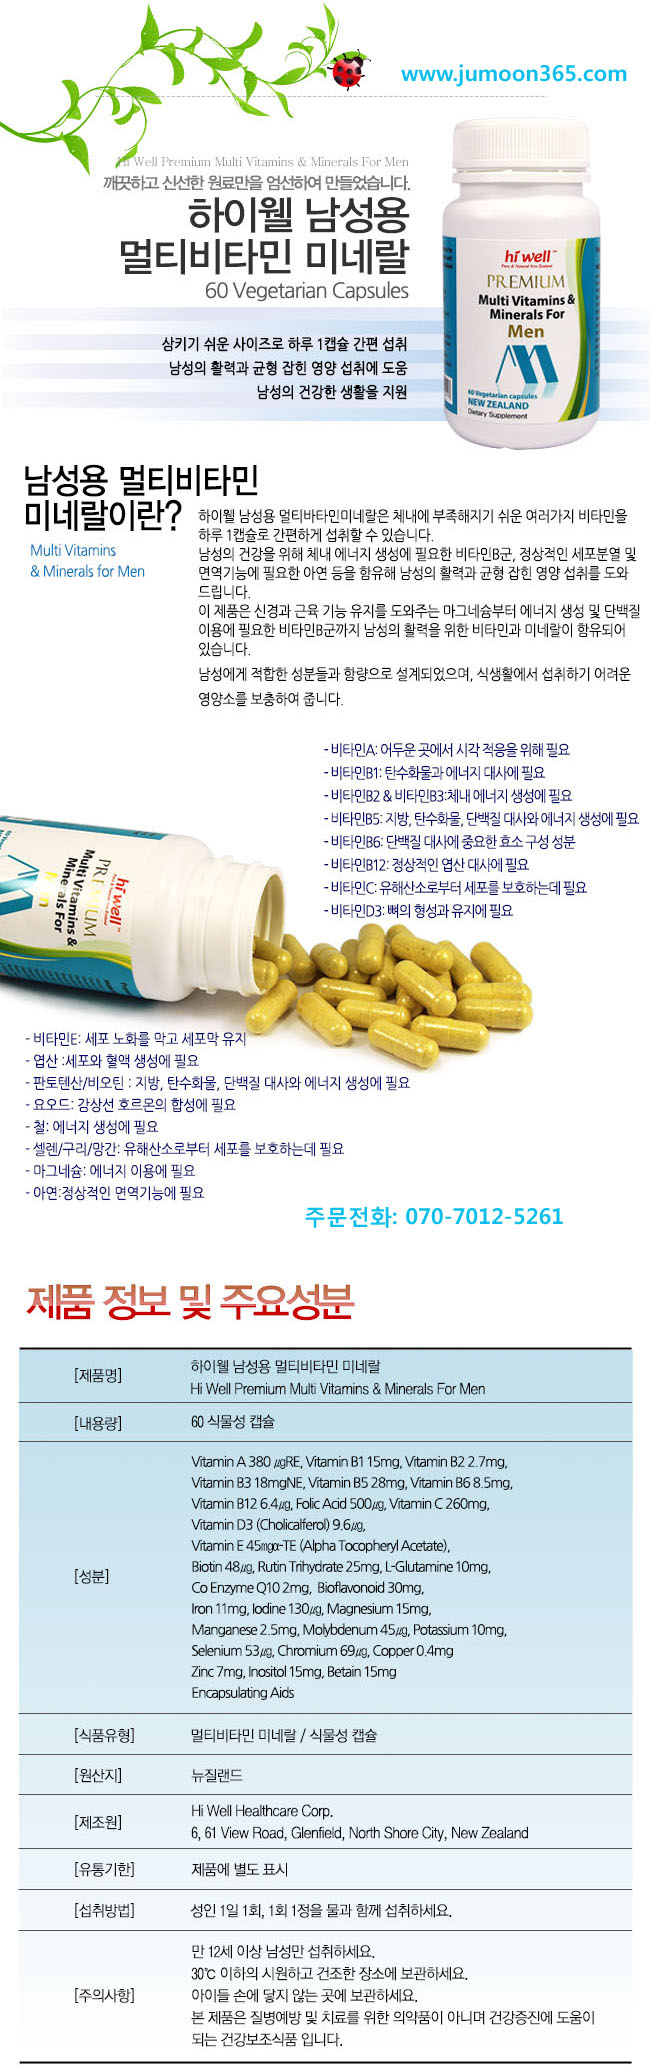 HW_Multi Vitamins for Men_650(2).jpg